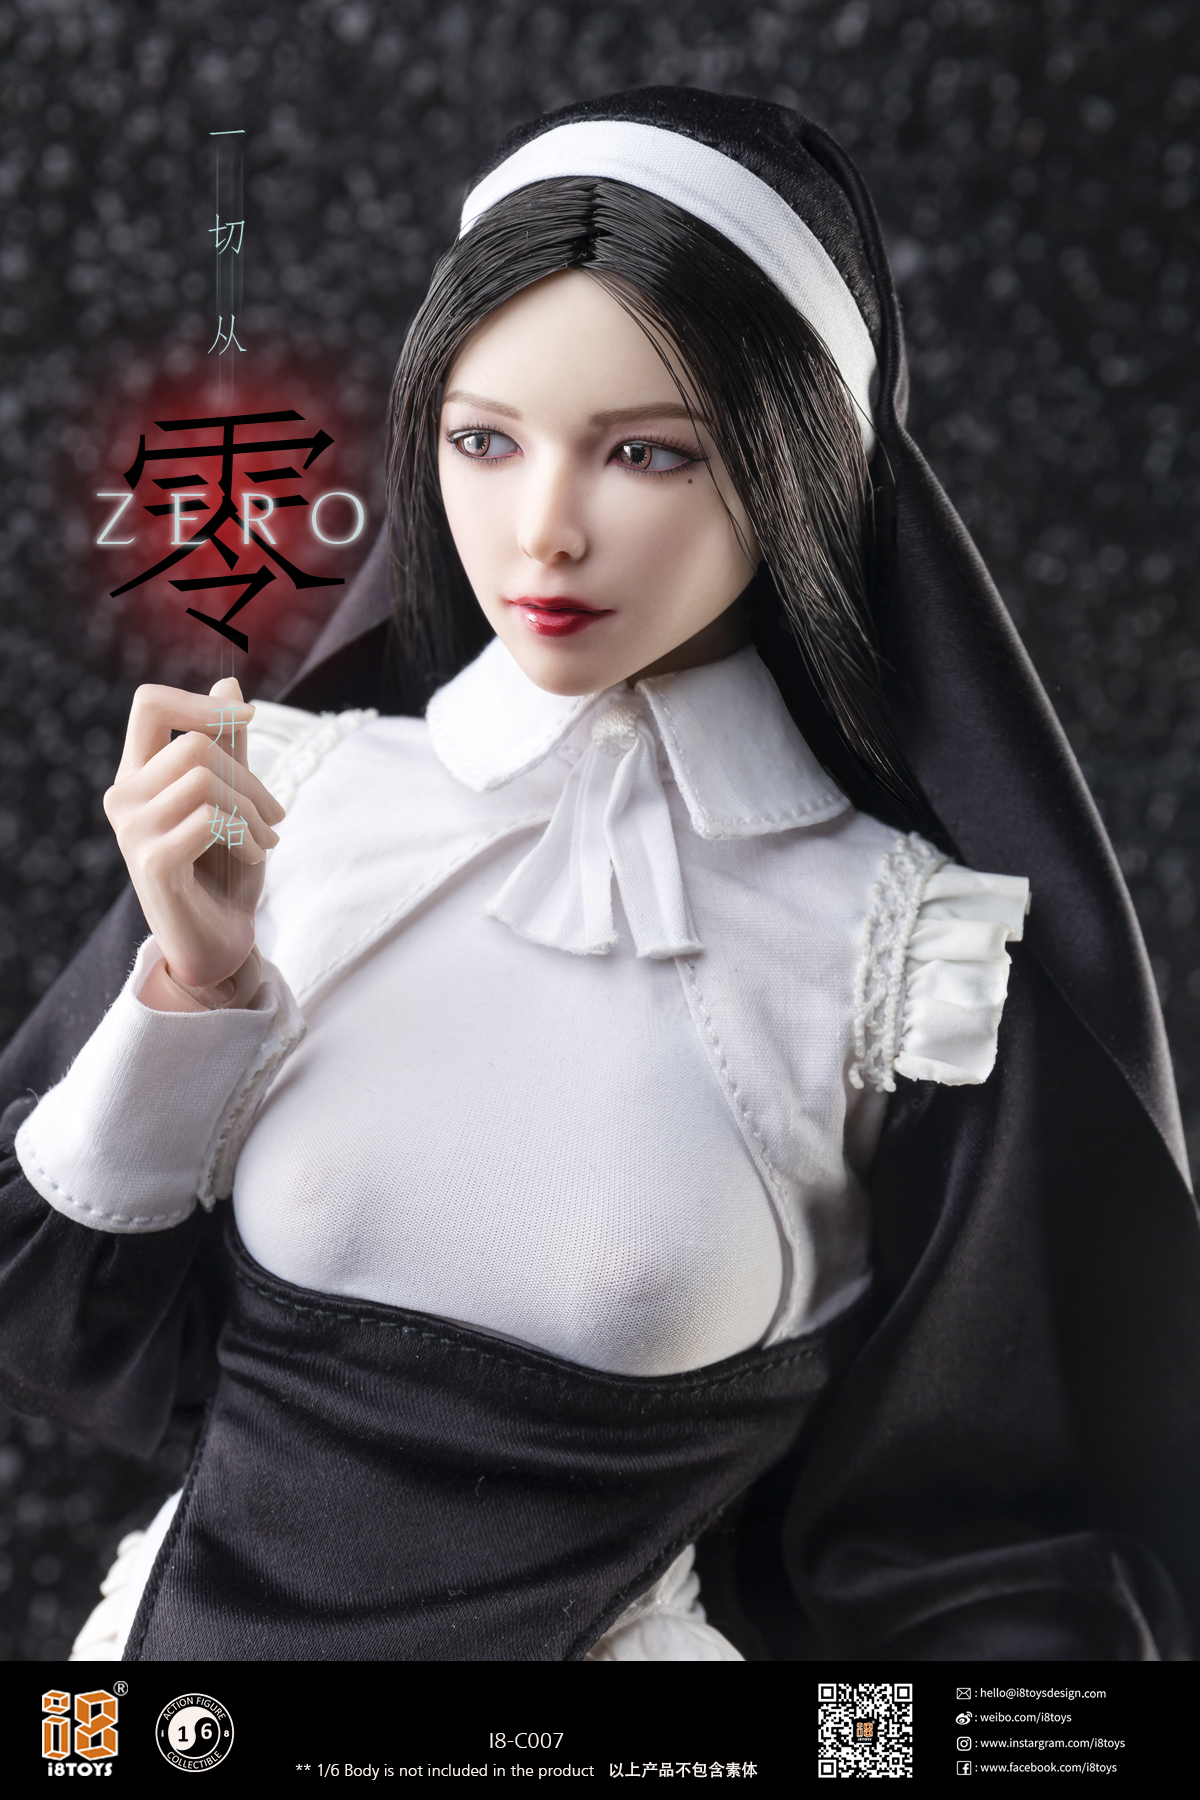 I8-C007 - I8Toys 1/6 Zero (The Nun) Collectible Costume Set